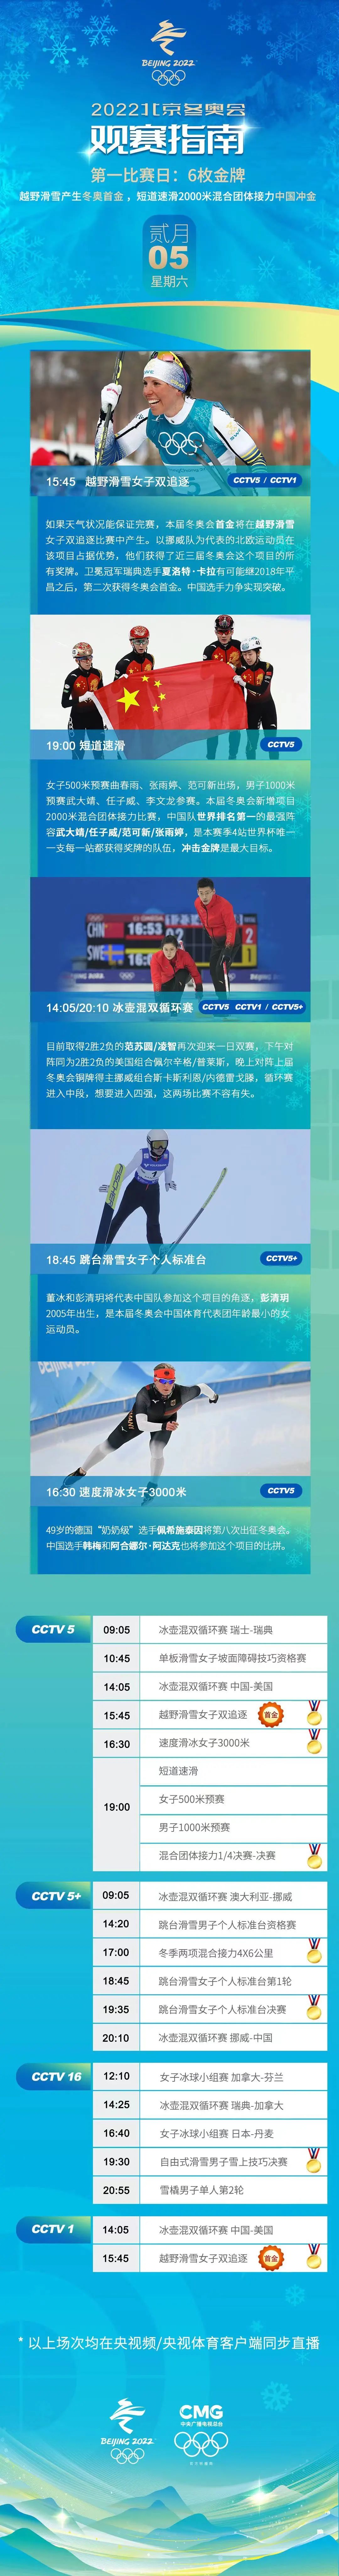 短道速滑队有望产生北京冬奥会首枚金牌越野滑雪项目将产生六枚金牌